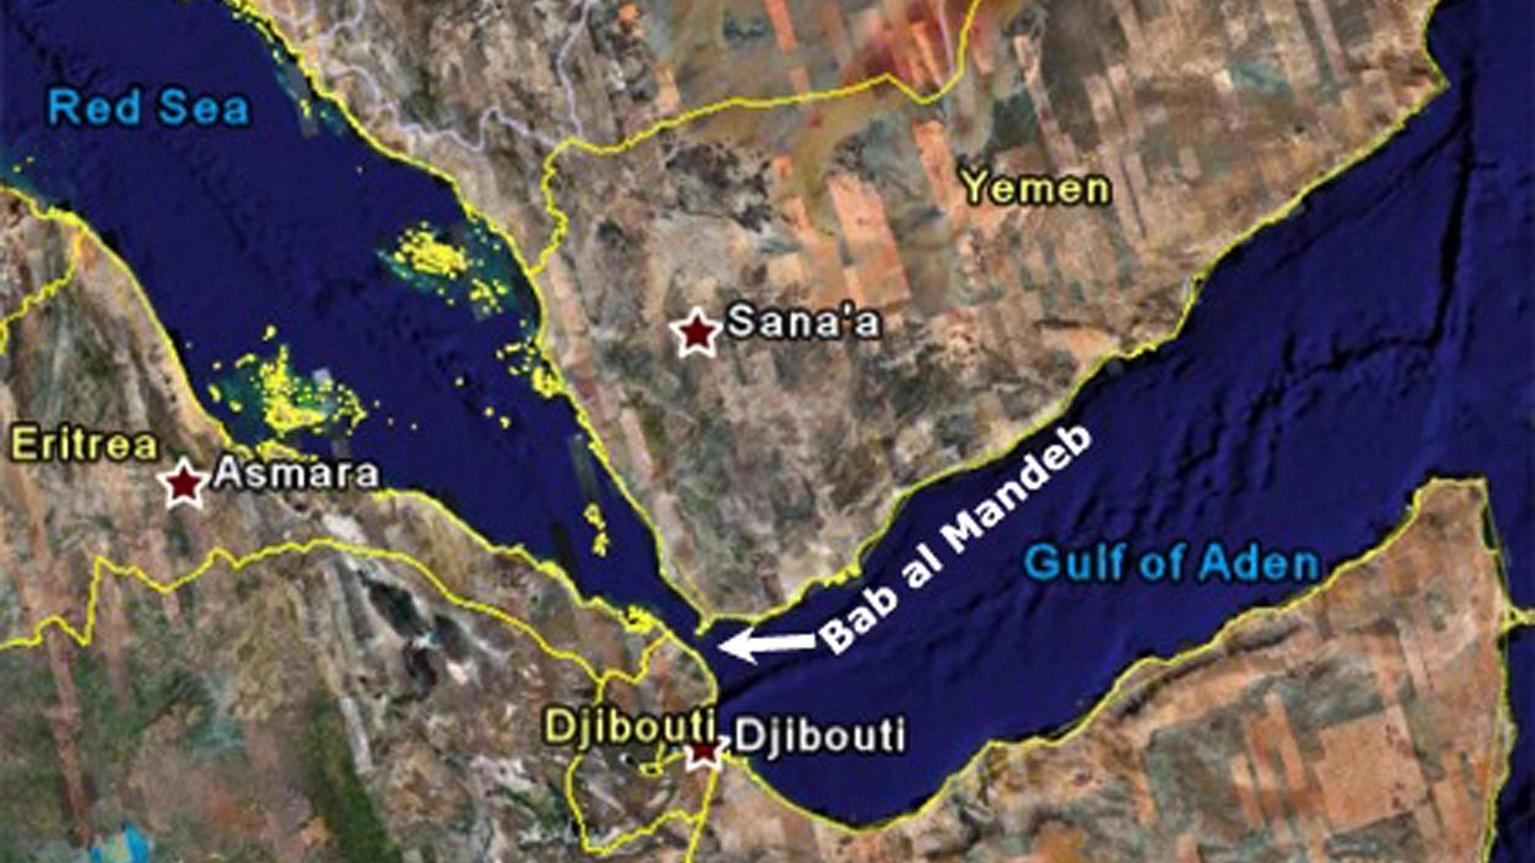 Nave mercantile colpita da missile nel golfo di Aden